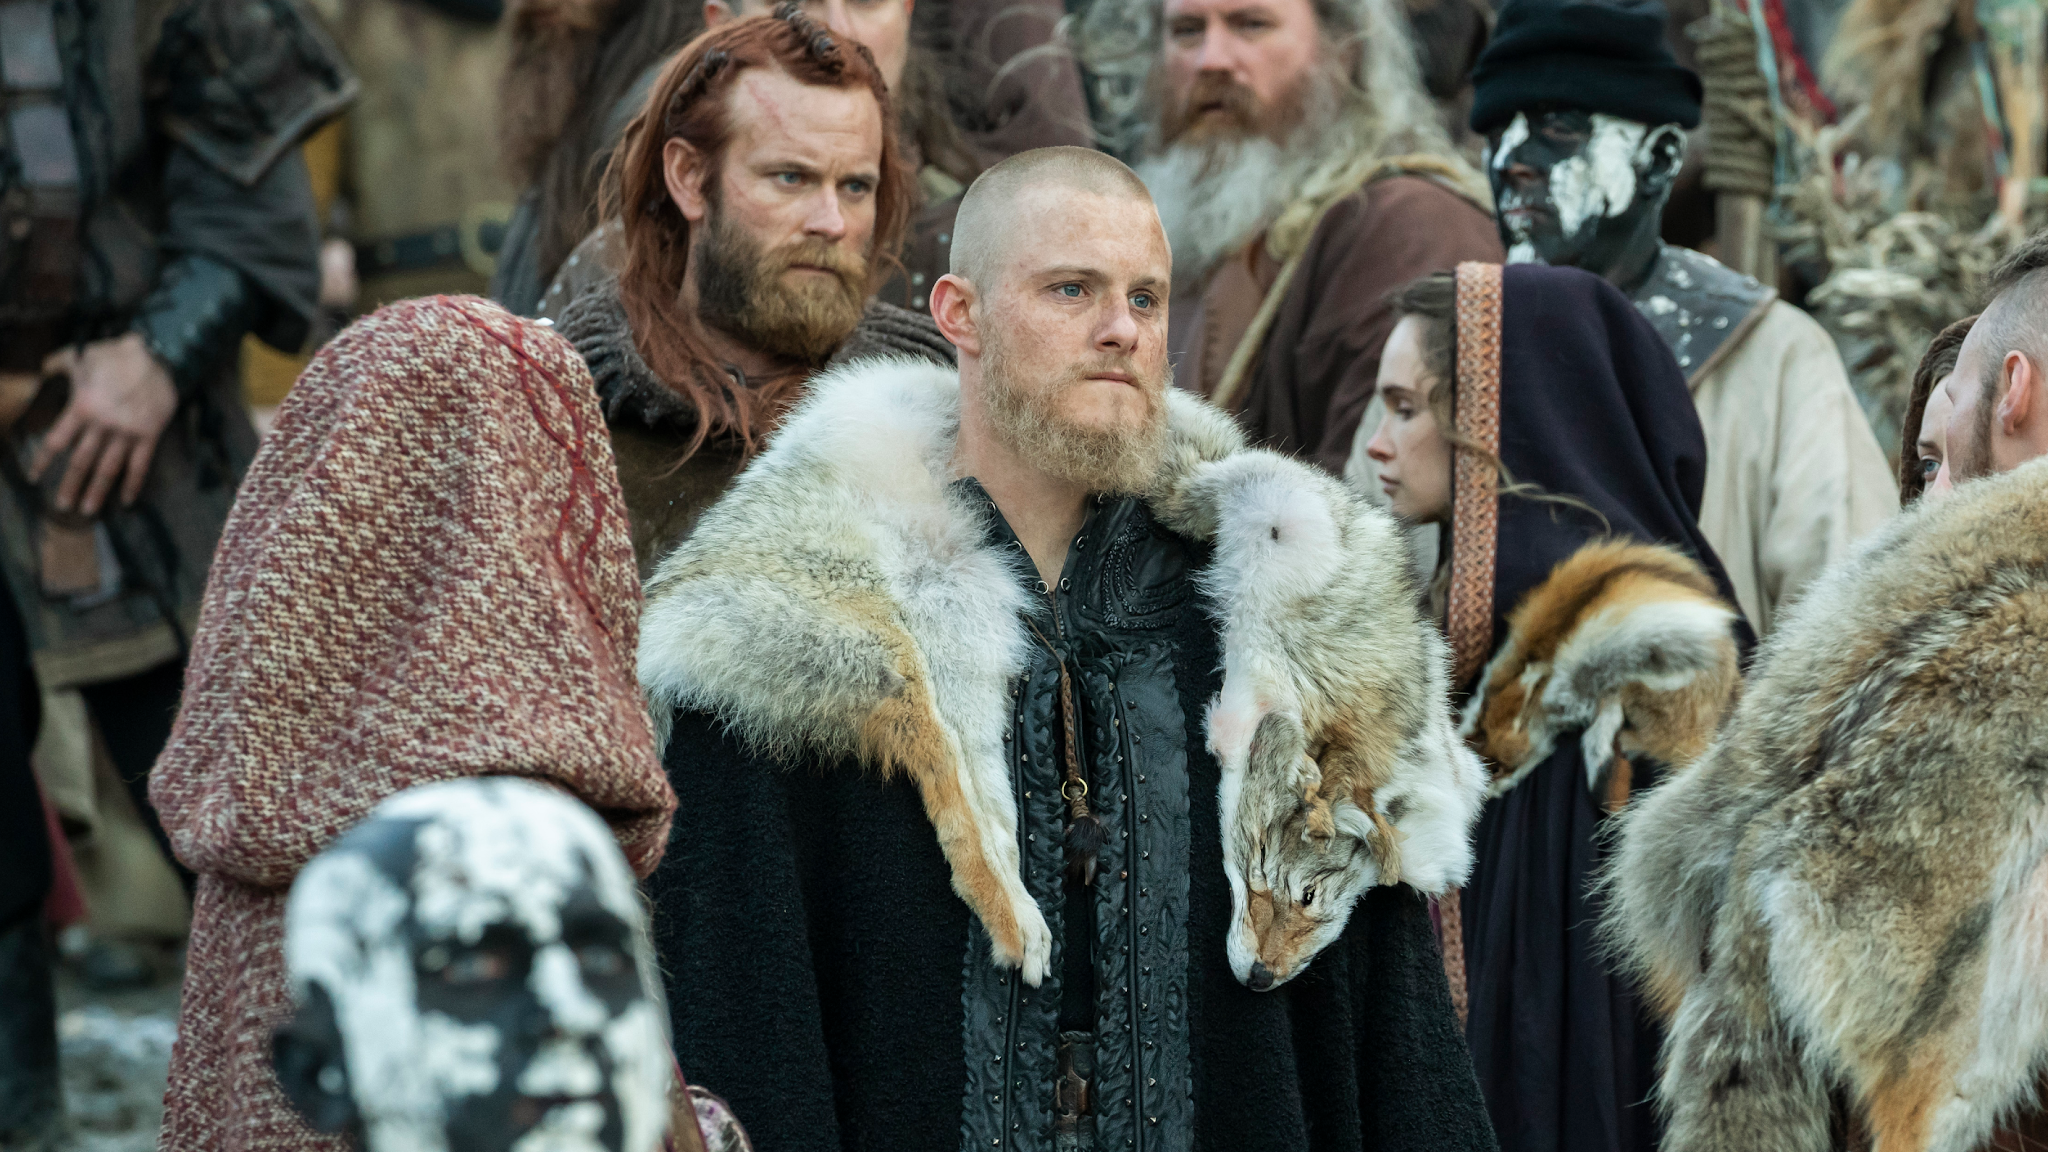 Vikings of Kattegat - 𝘼𝙡𝙚𝙭𝙖𝙣𝙙𝙚𝙧 𝙇𝙪𝙙𝙬𝙞𝙜 as 𝘉𝘫𝘰̈𝘳𝘯  𝘐𝘳𝘰𝘯𝘴𝘪𝘥𝘦 💙